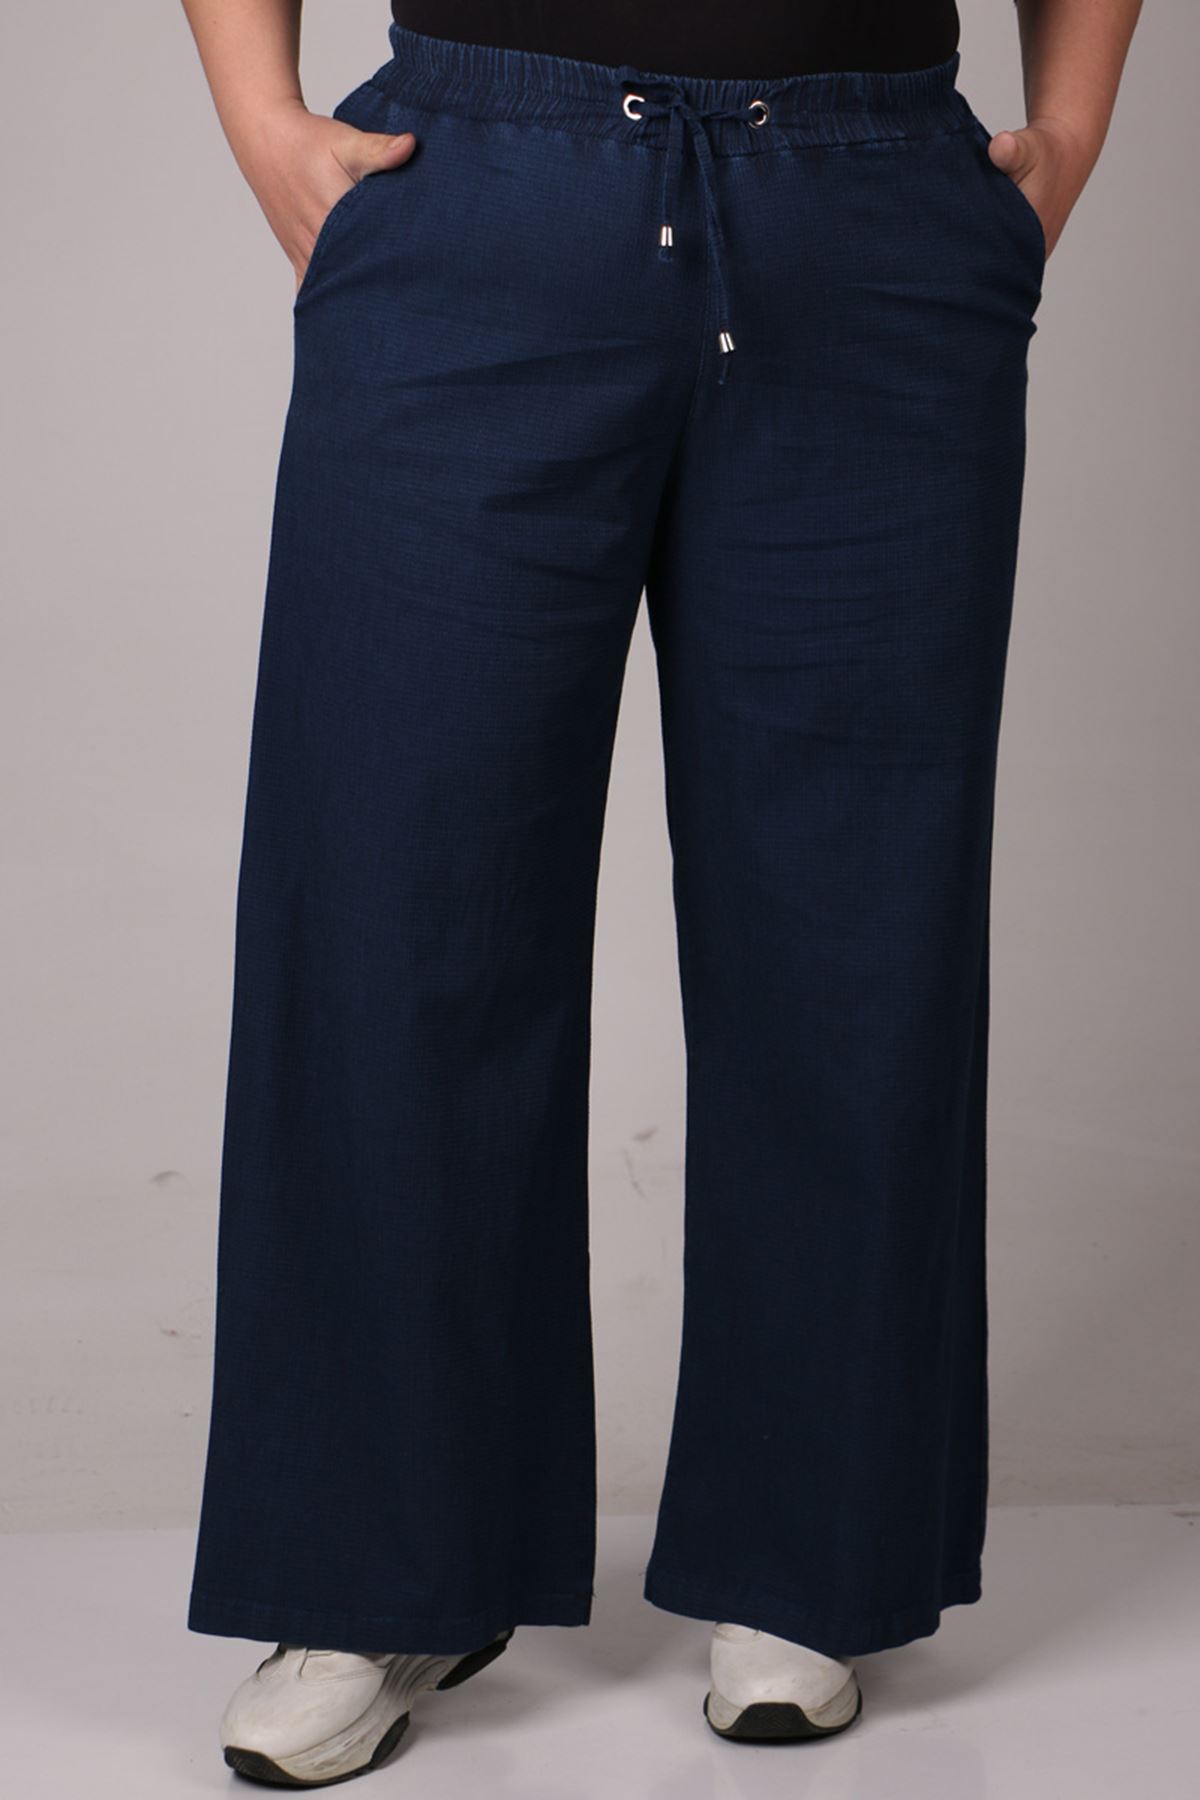 29000-1 Plus Size Piti Kareli Plentiful Trotter Jeans Pants - Navy blue